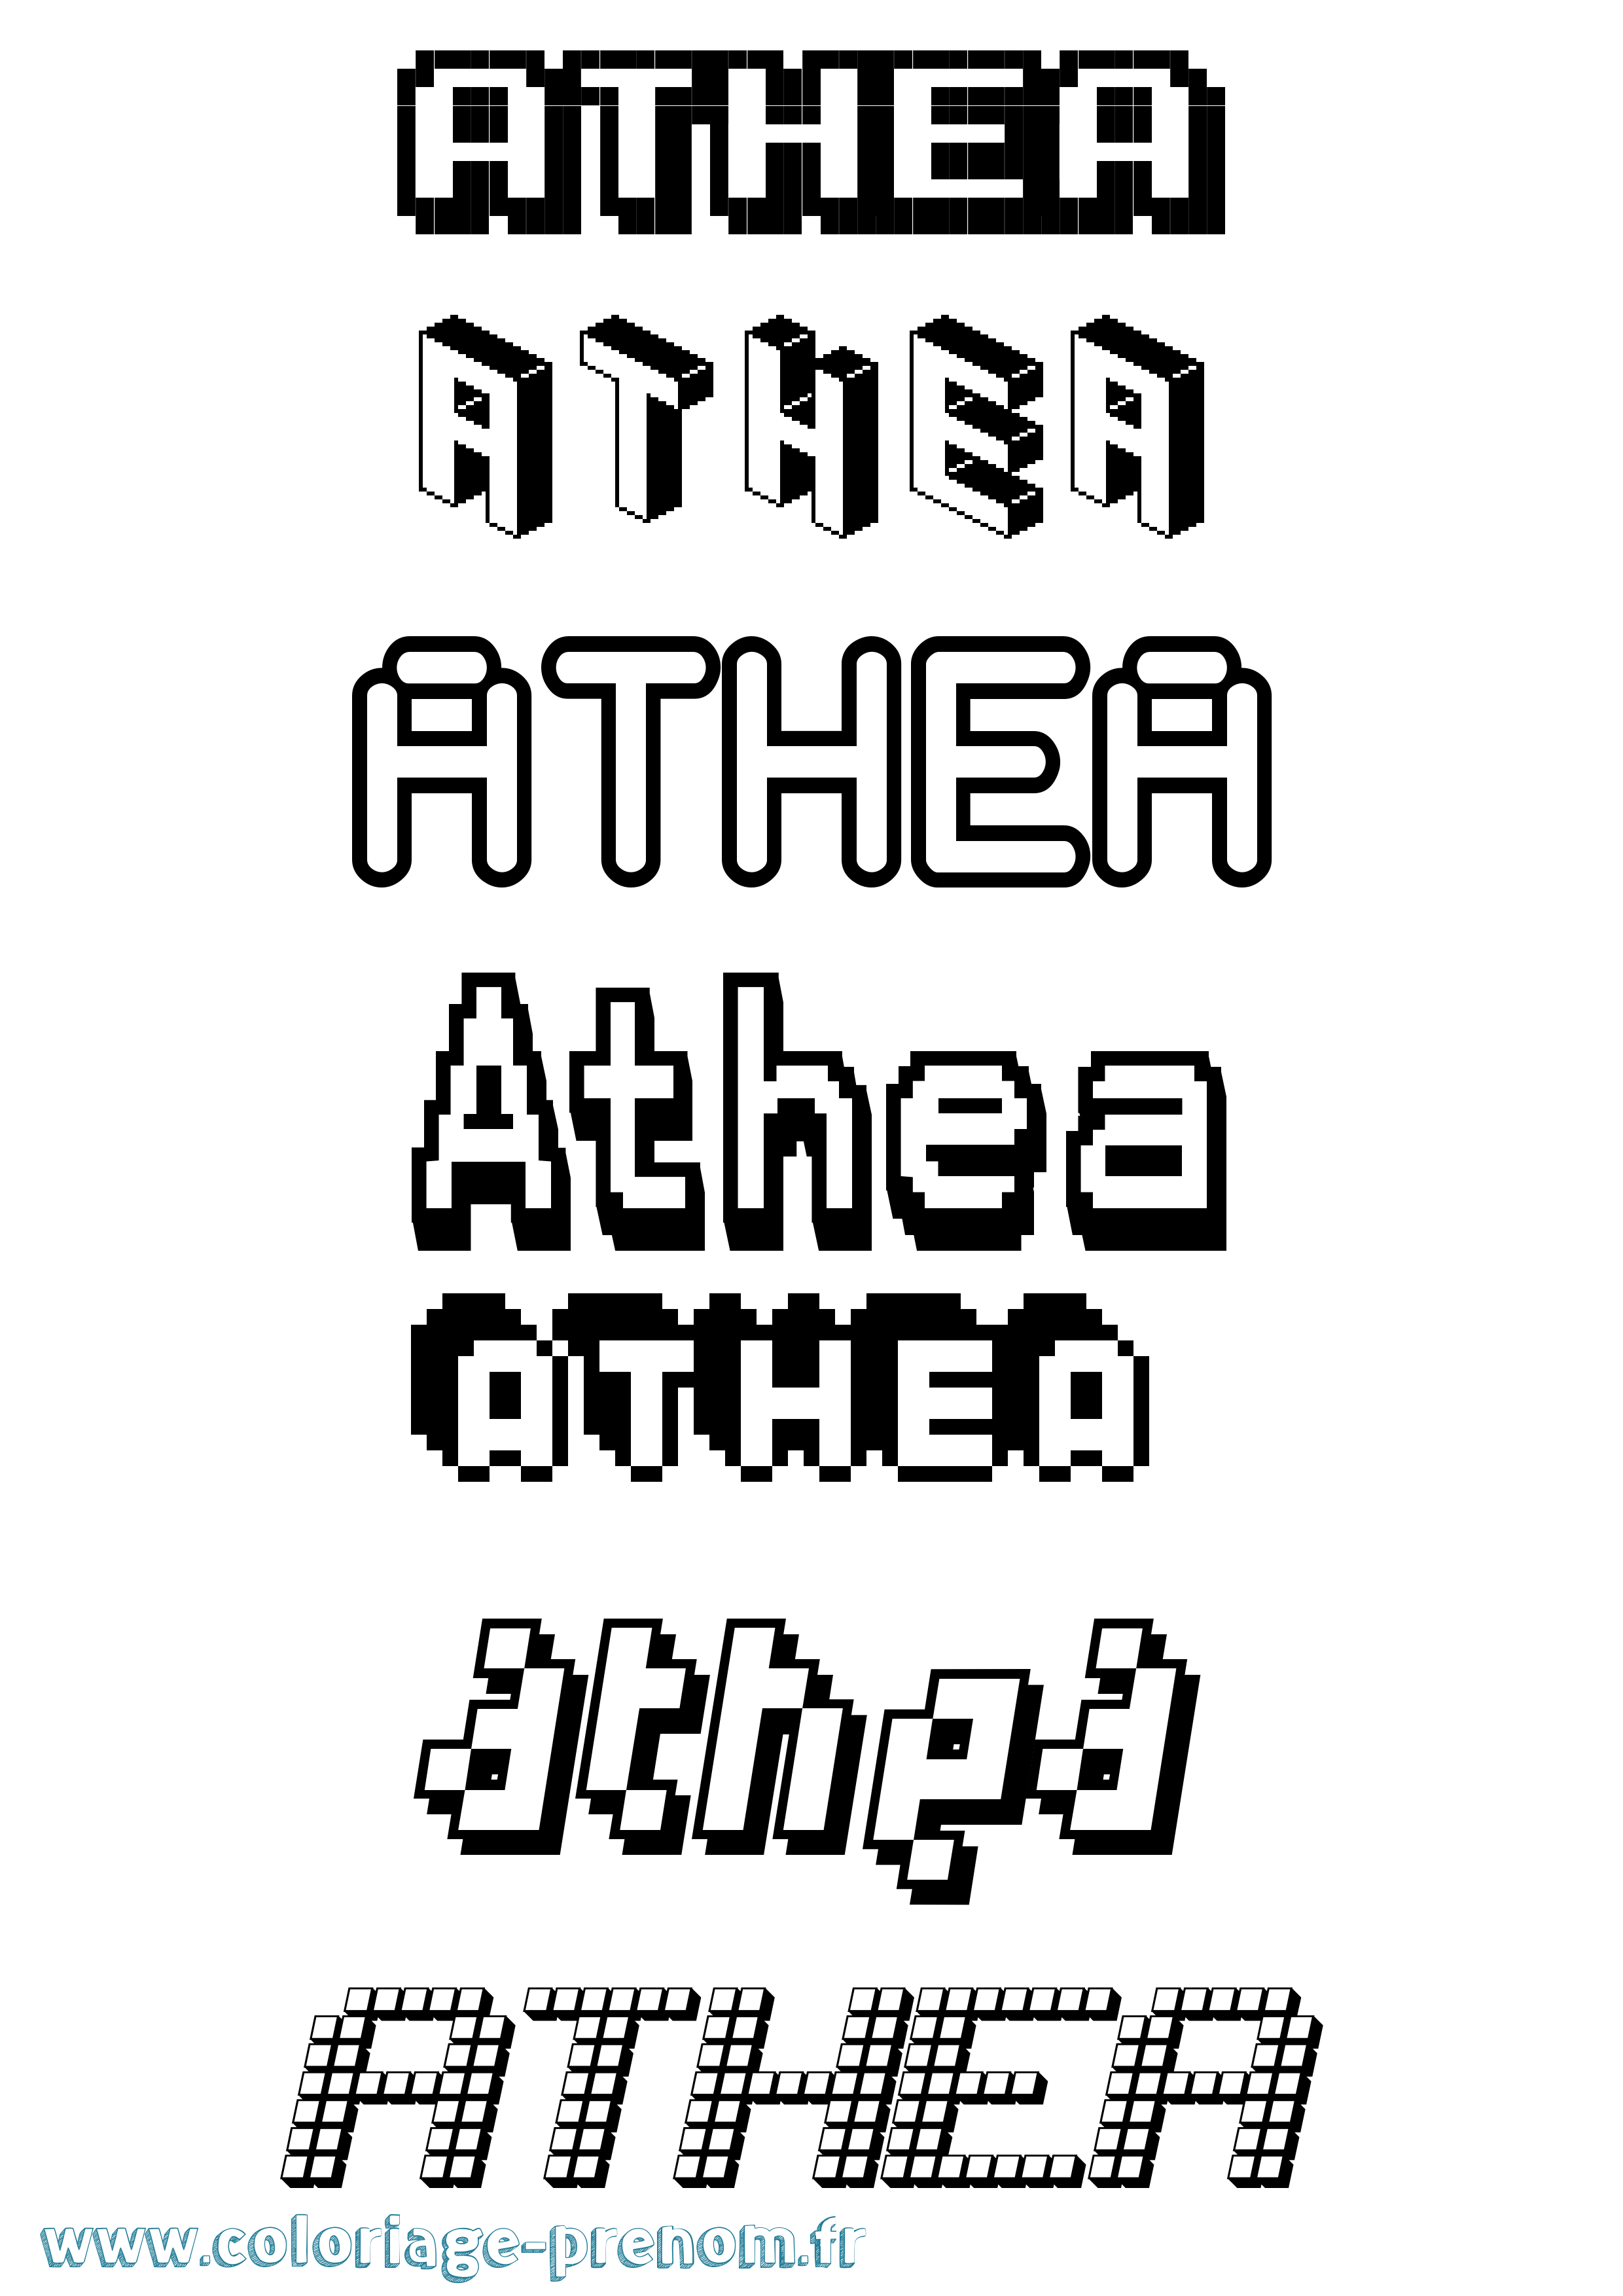 Coloriage prénom Athea Pixel